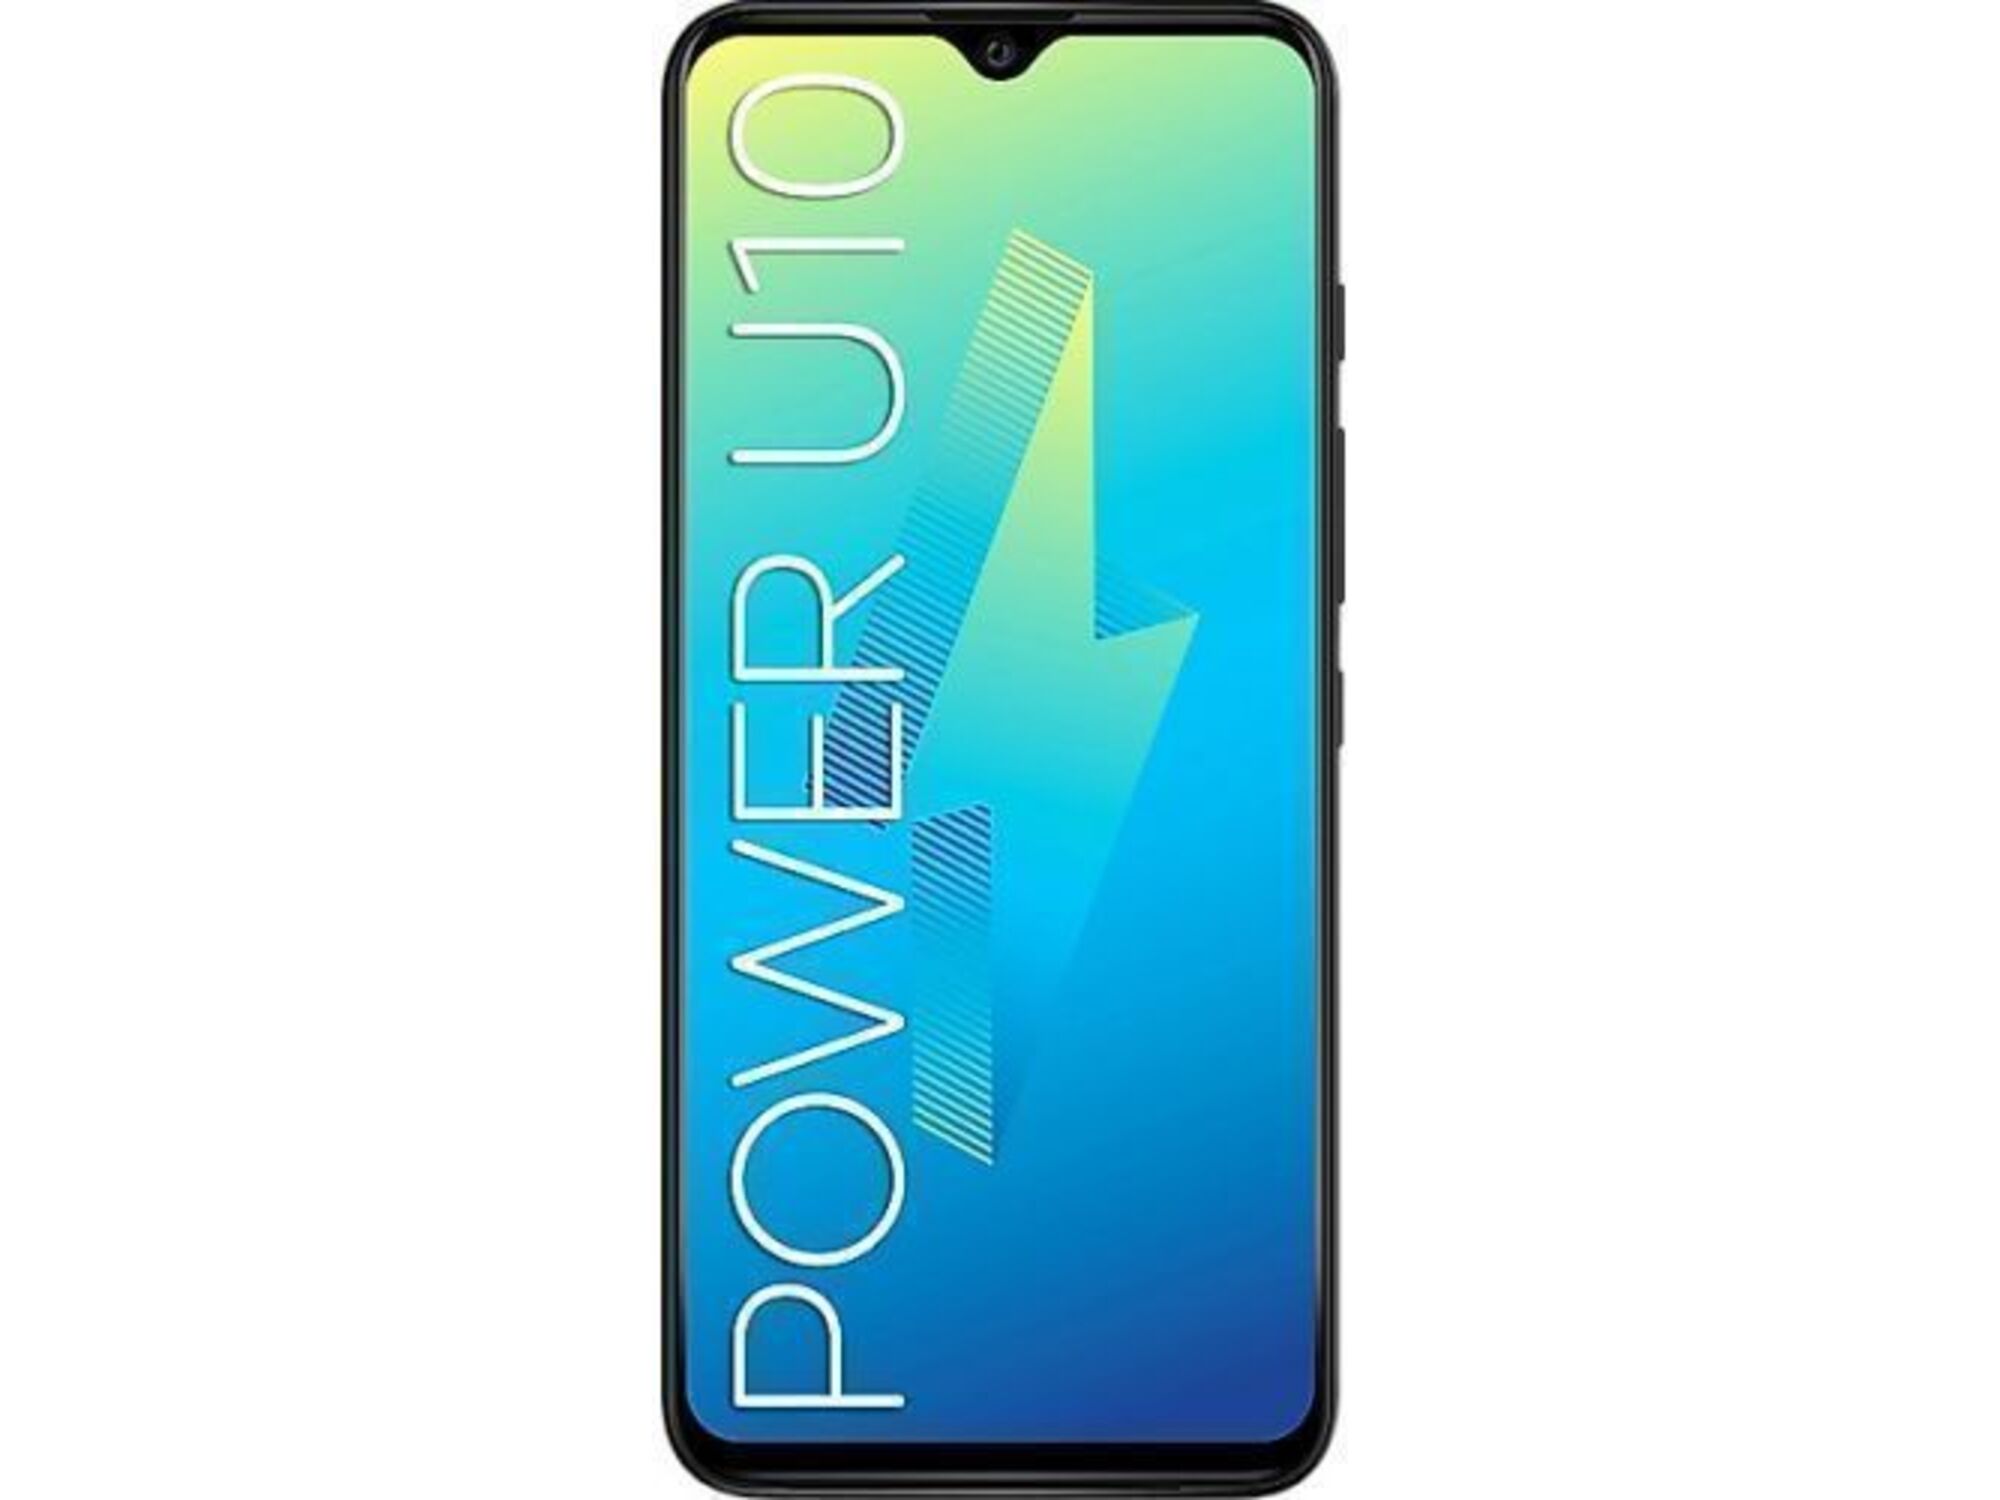 Wiko Mobilni telefon Power U10